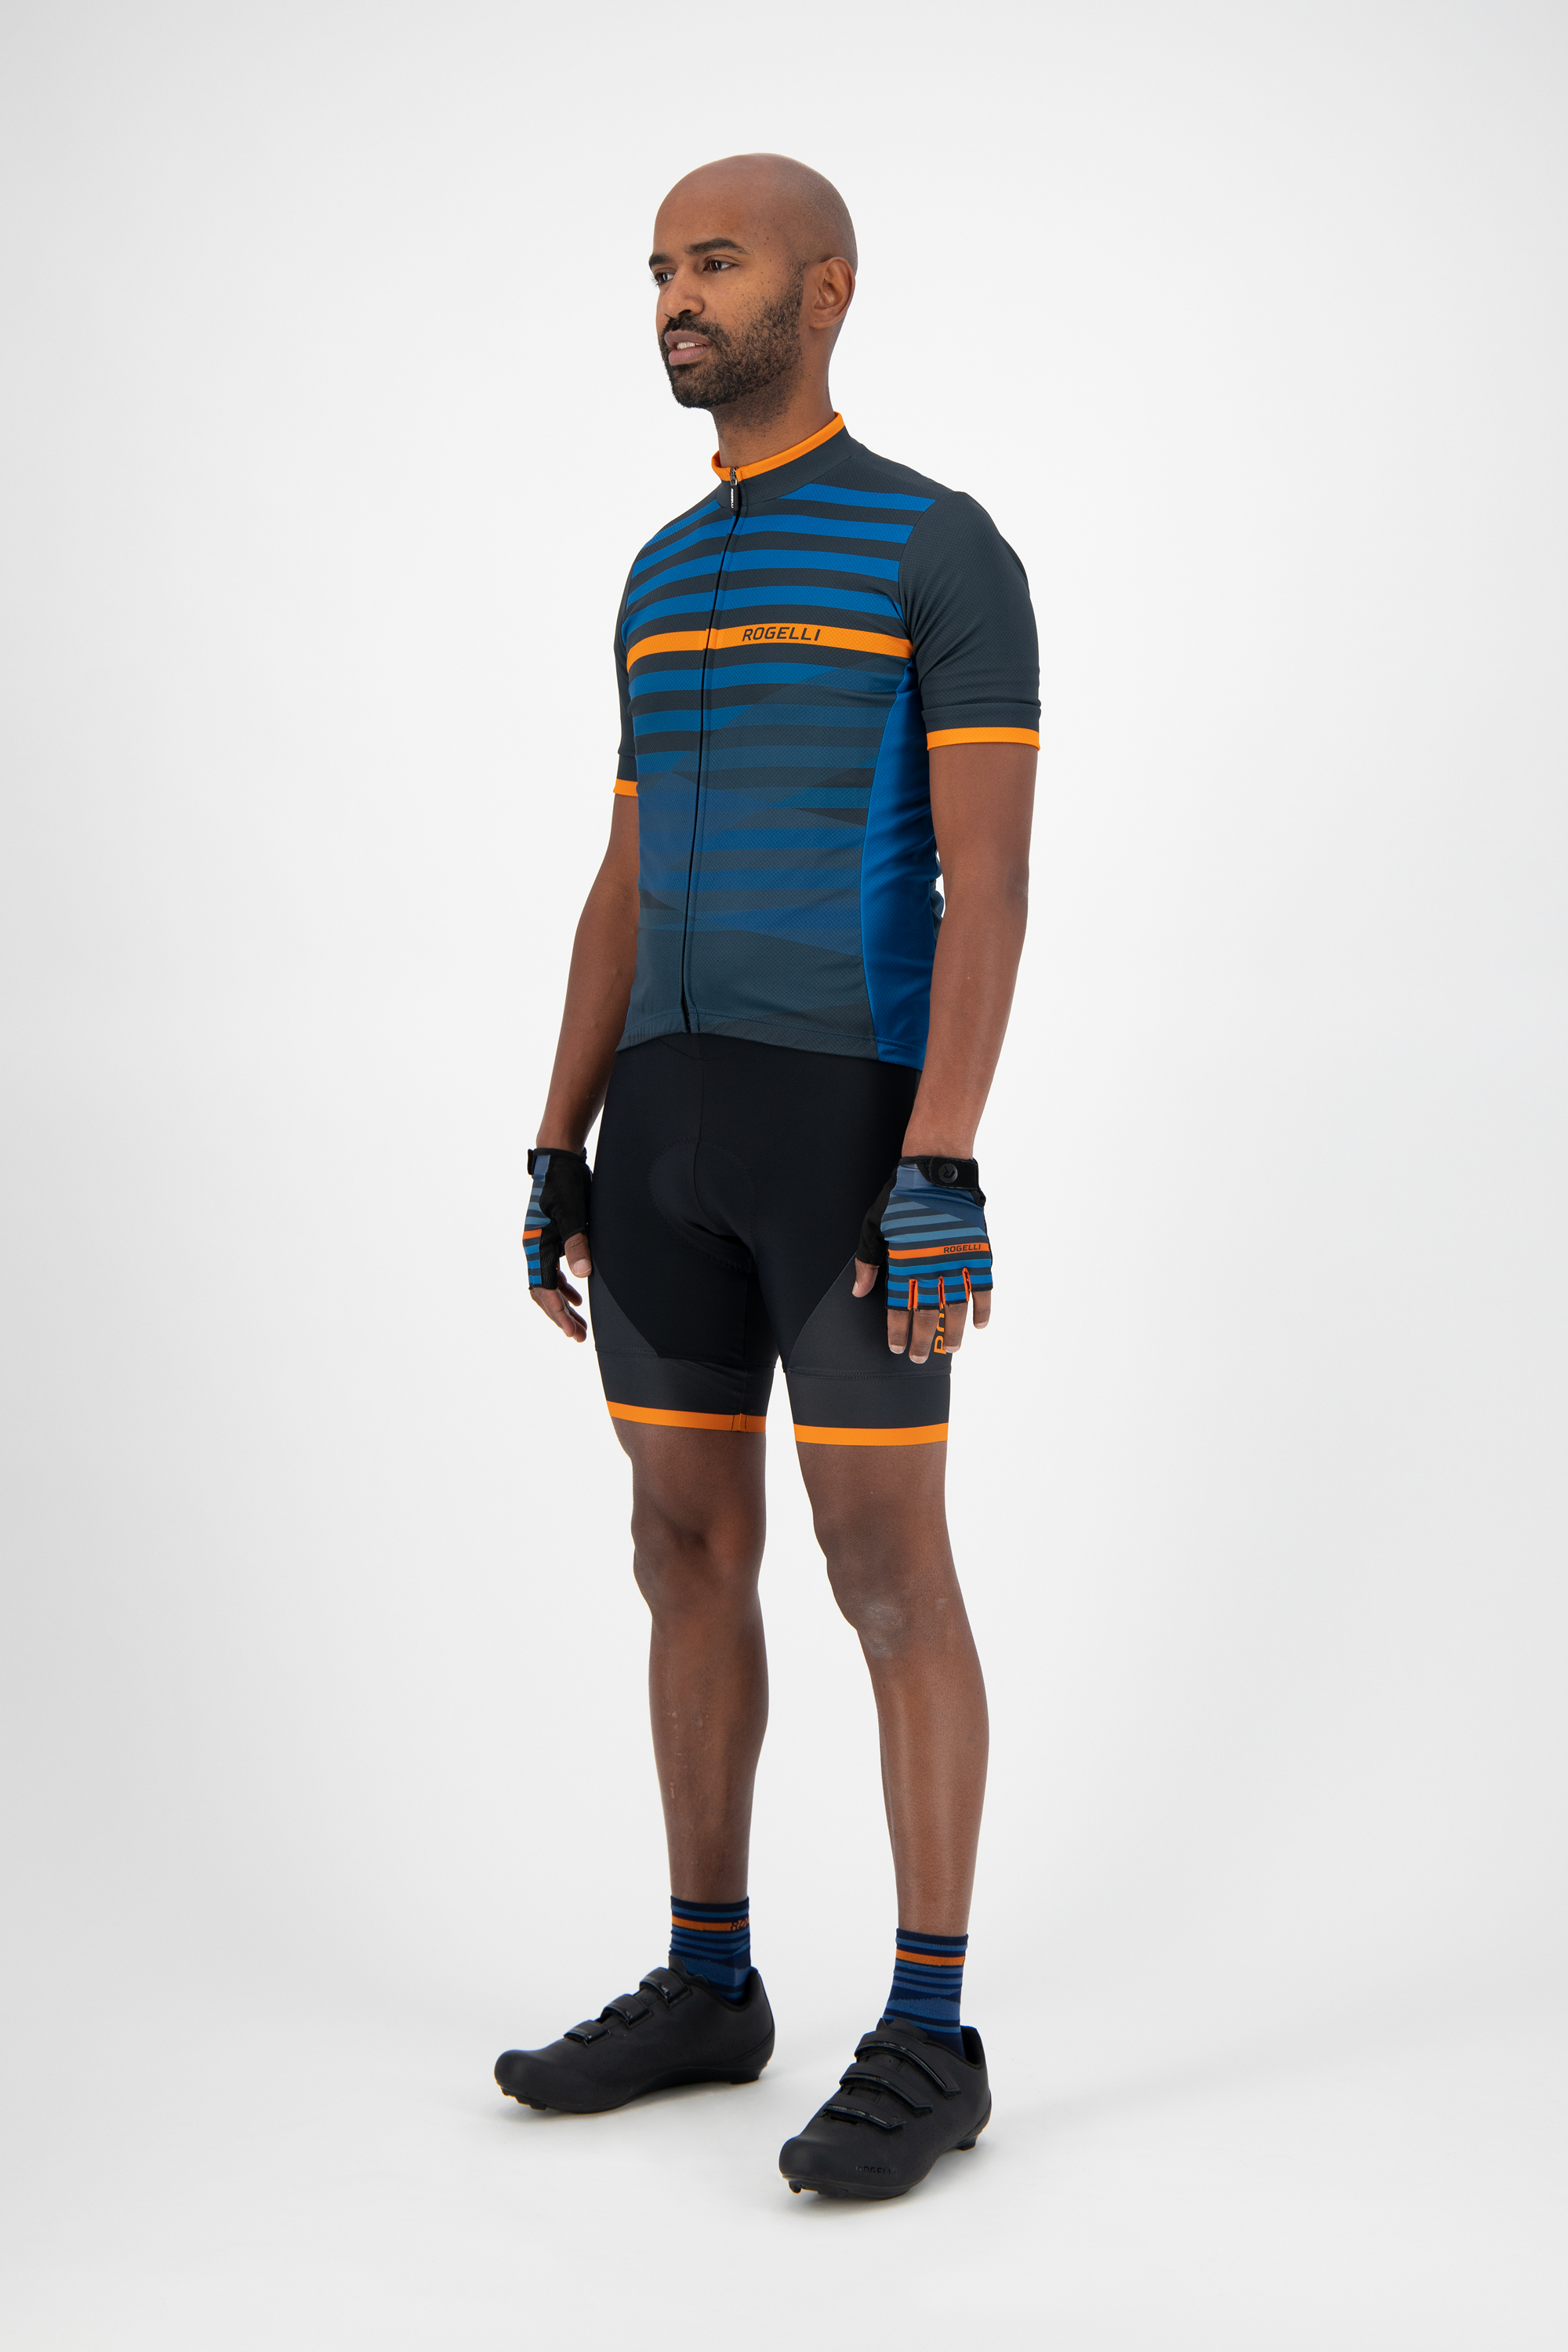 Heren fietsshirt KM Stripe Blauw/oranje